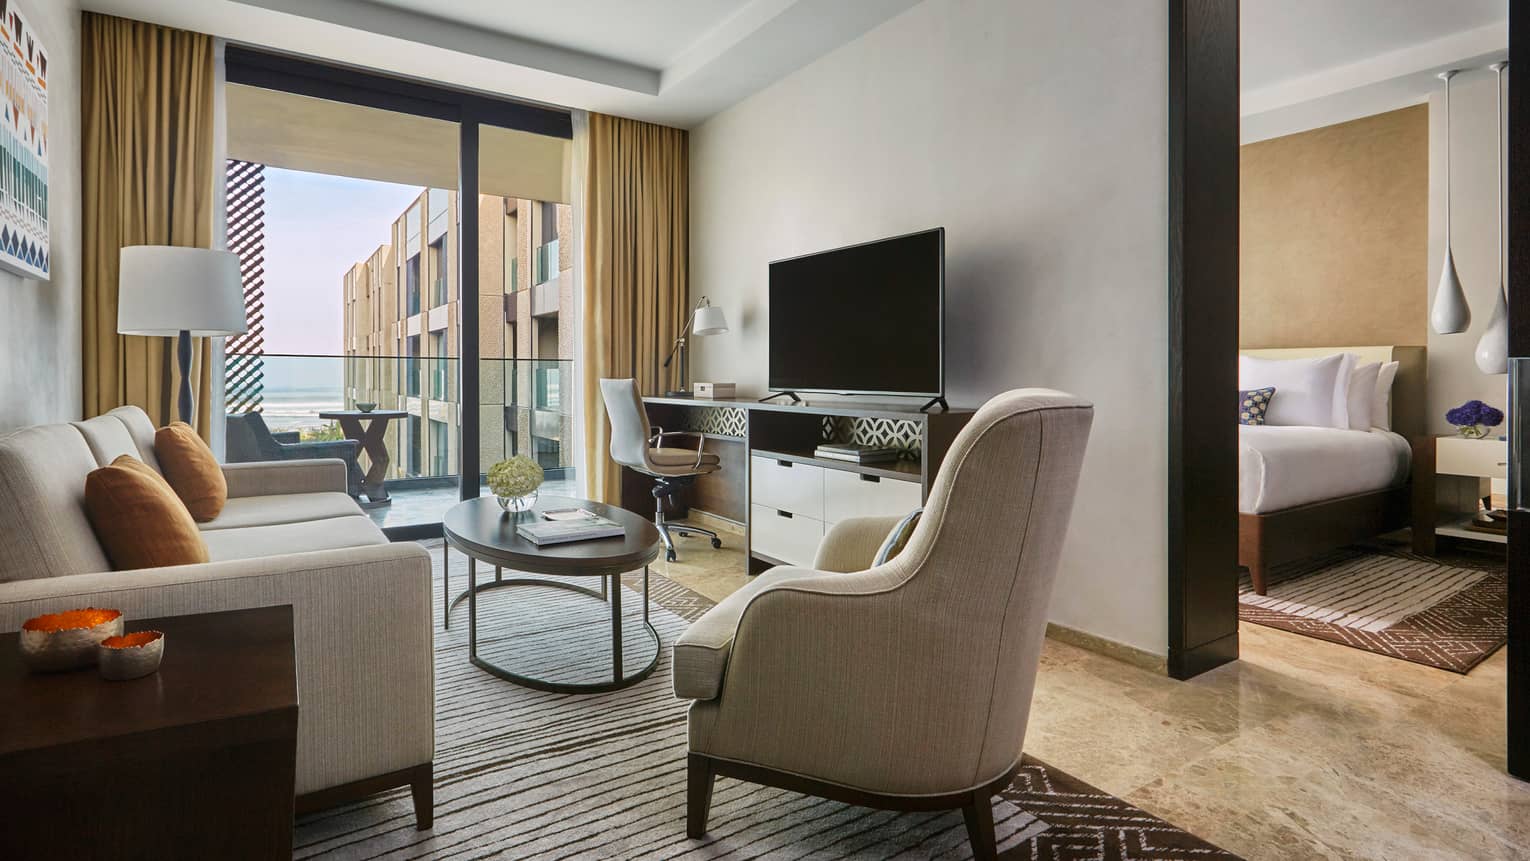 Four Seasons Deluxe Suite modern beige sofa, armchair, TV, large glass door to balcony